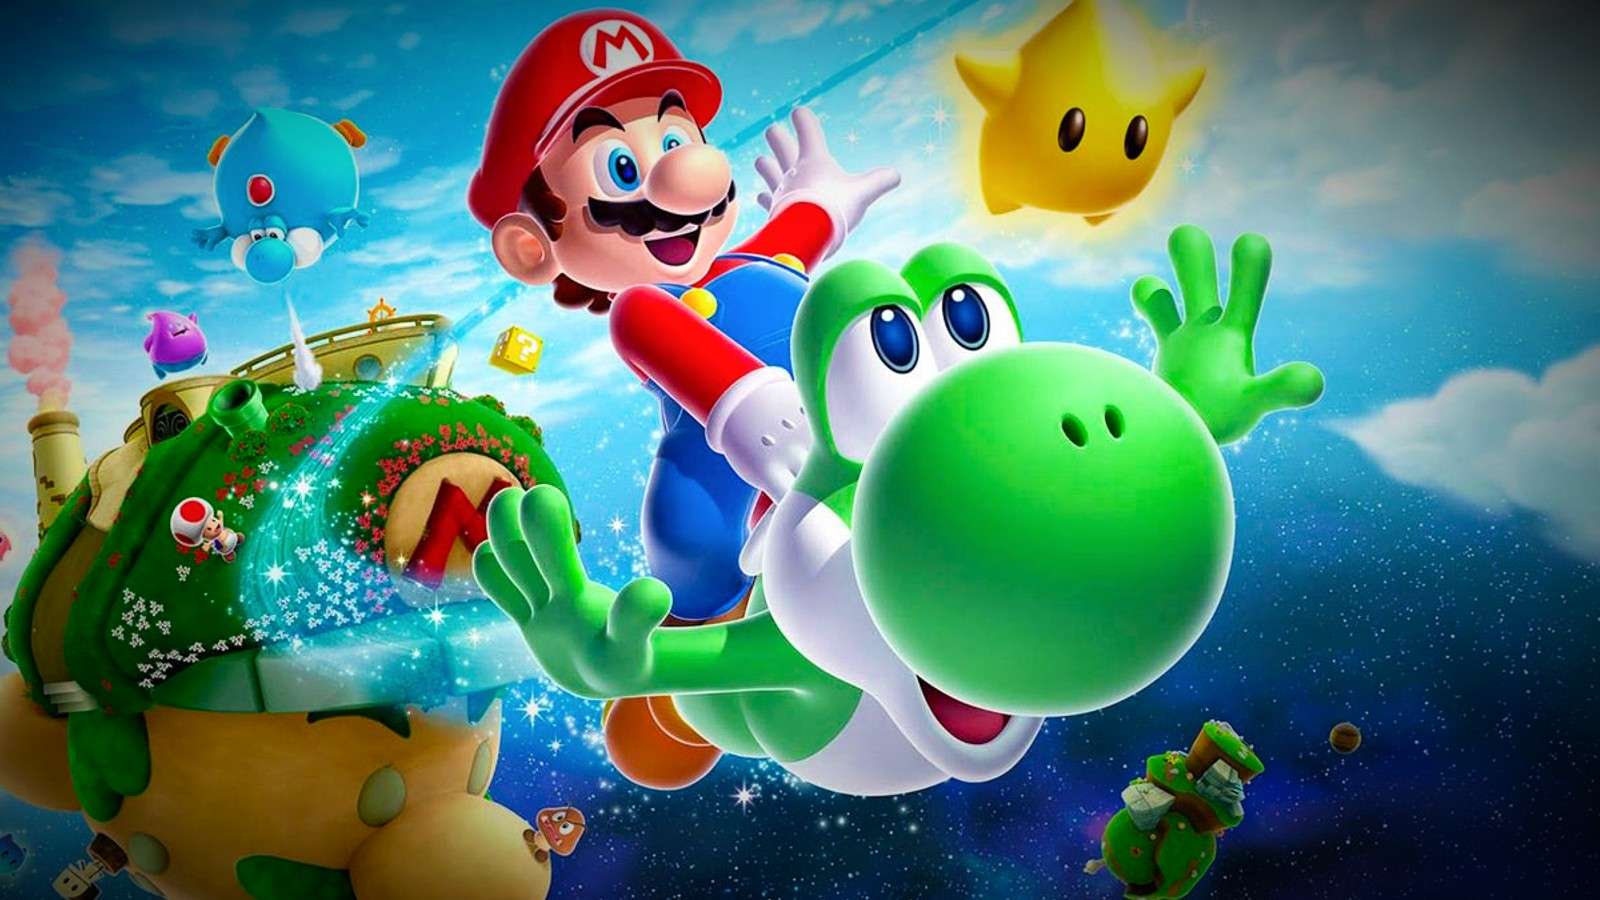 Yoshi and Mario in Super Mario Galaxy 2